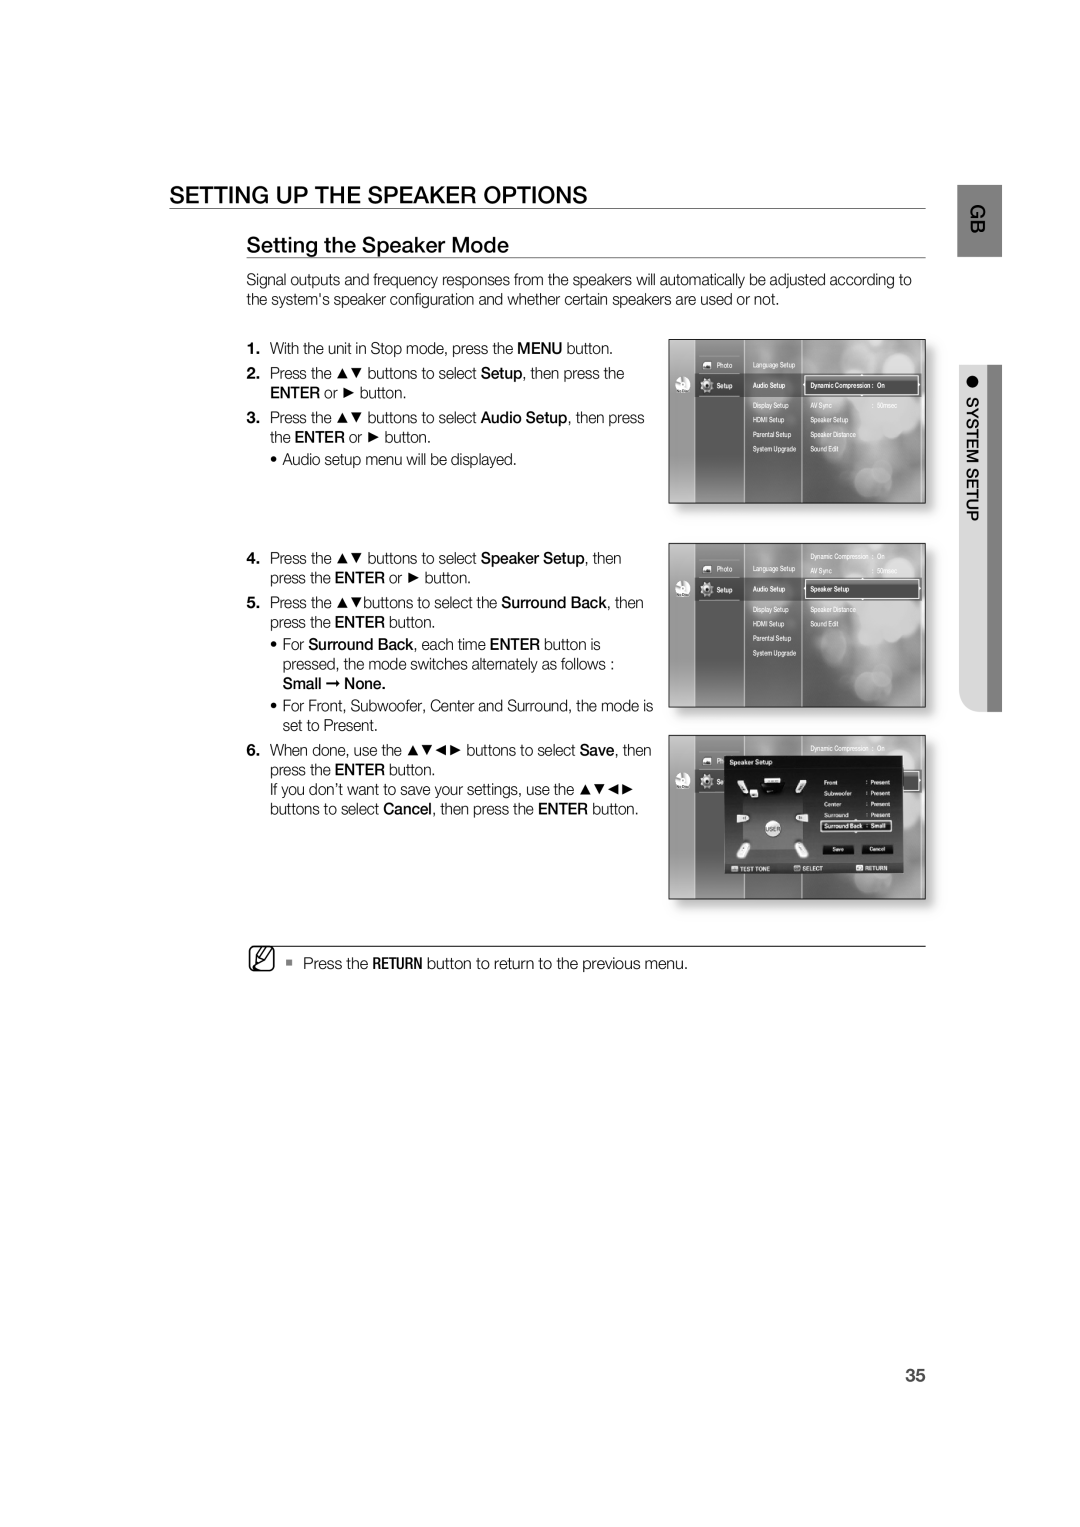 Samsung AH68-02019K manual Setting Up The Speaker Options, Setting the Speaker Mode 